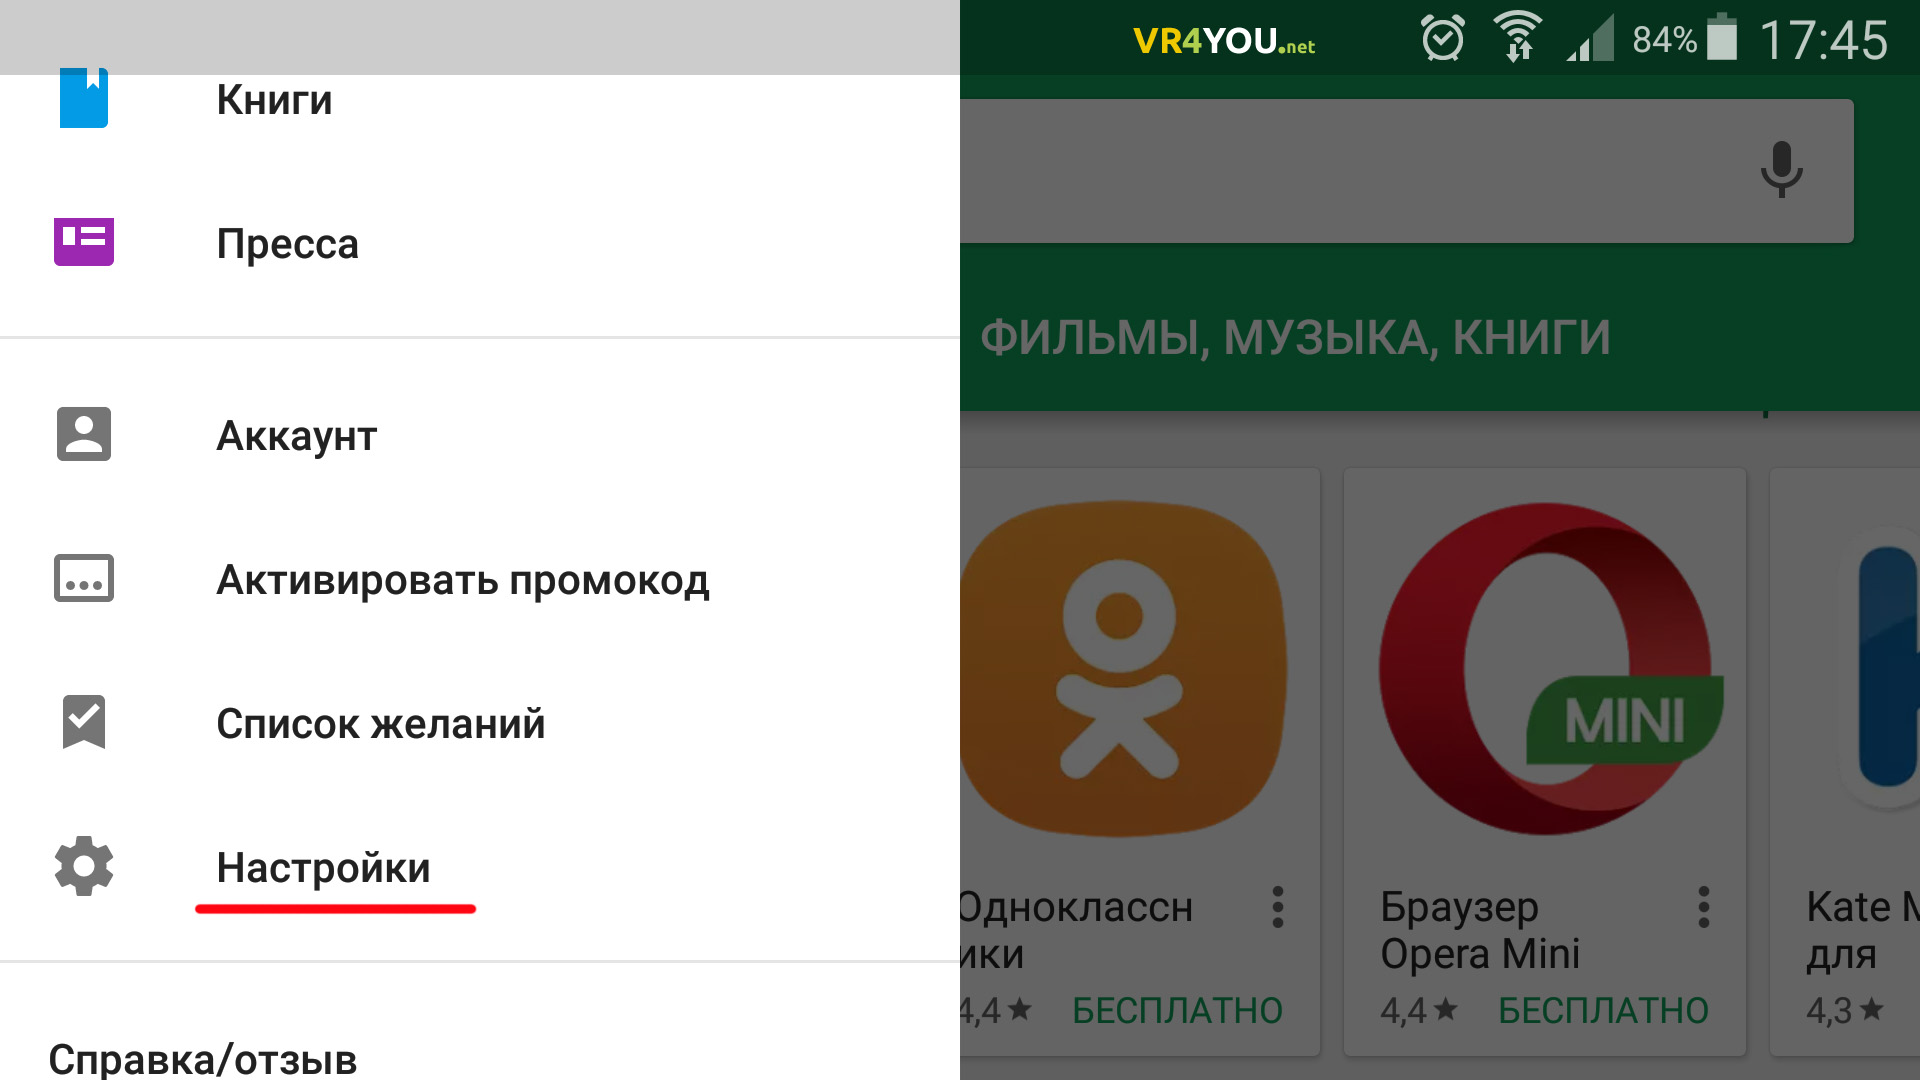 Как обновить приложение перчатка. Обновить приложение на андроиде. Как на андроиде отключить обновление приложений. Как отключить автообновление Stranica brauzer Android. Как отключить автообновление Яндекса на андроиде.